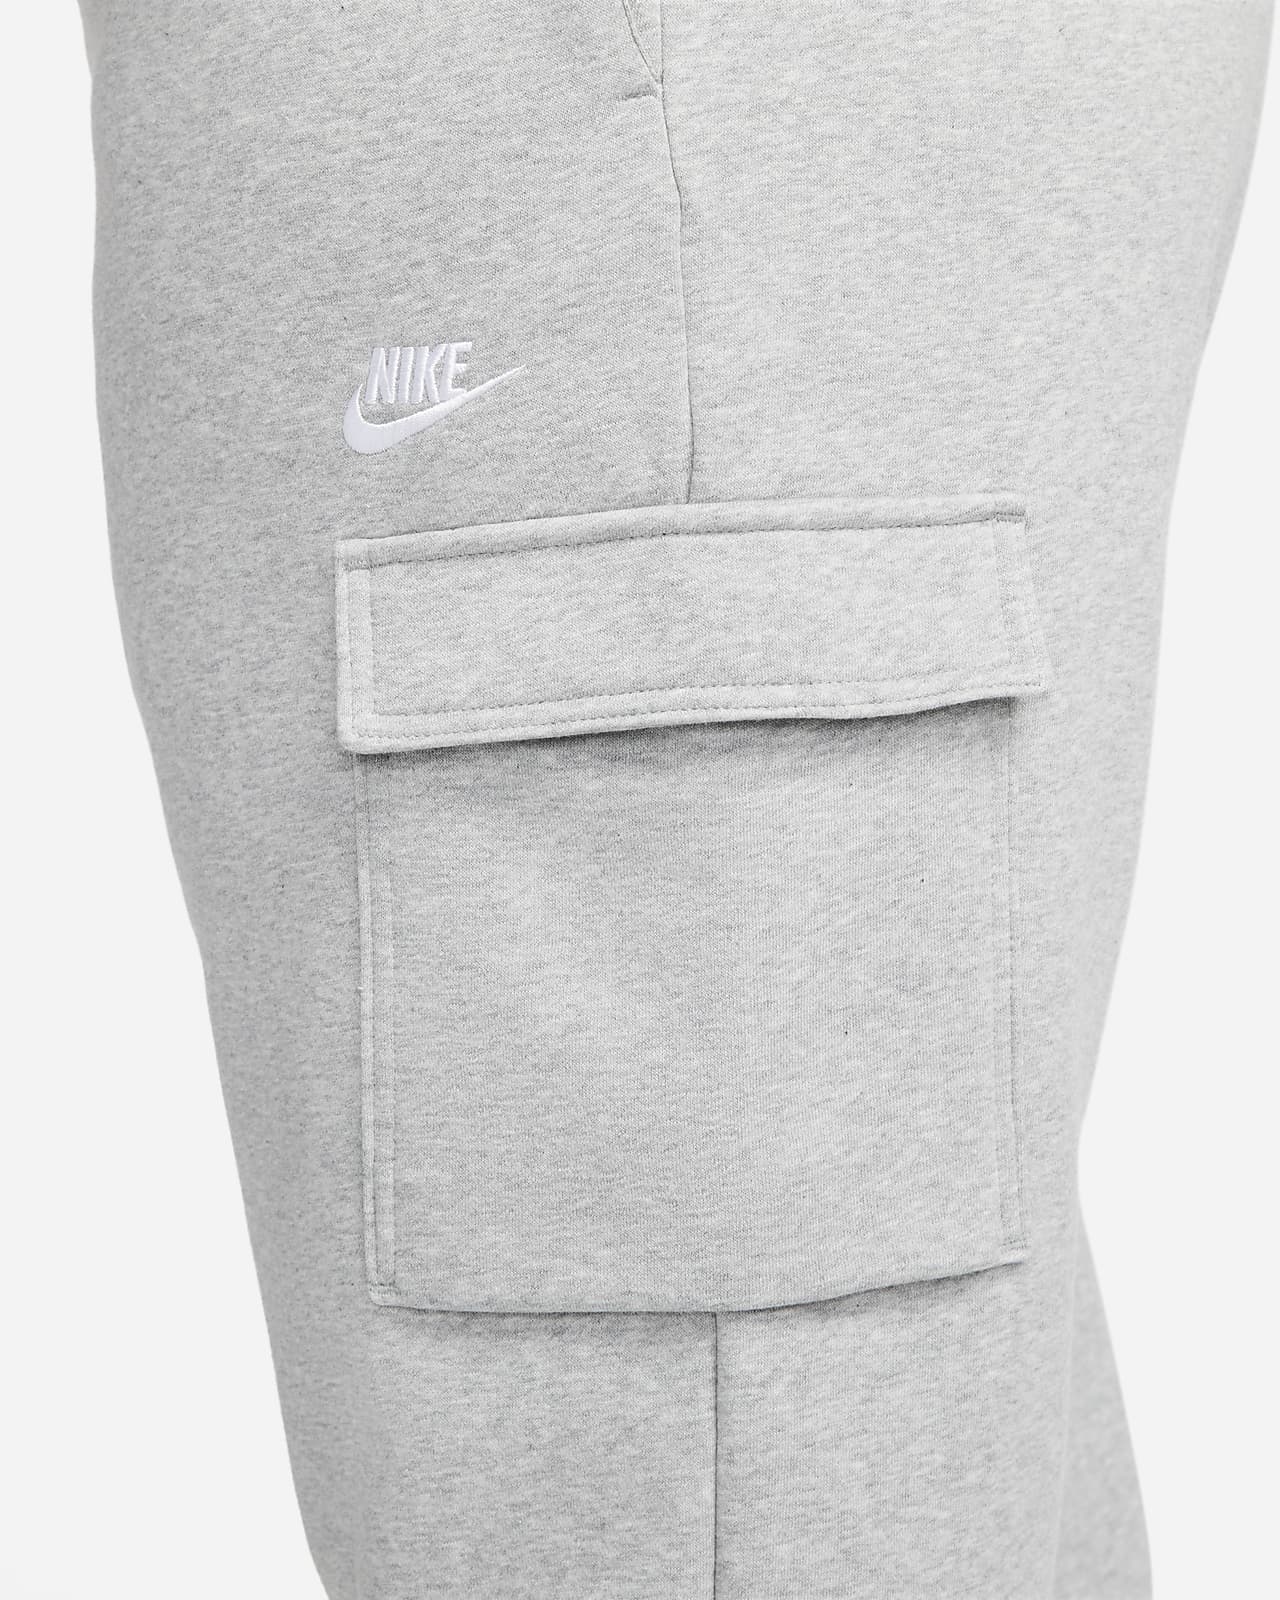 Nike NSW Club Fleece Mid Rise Tight Joggers - Dark Grey Heather